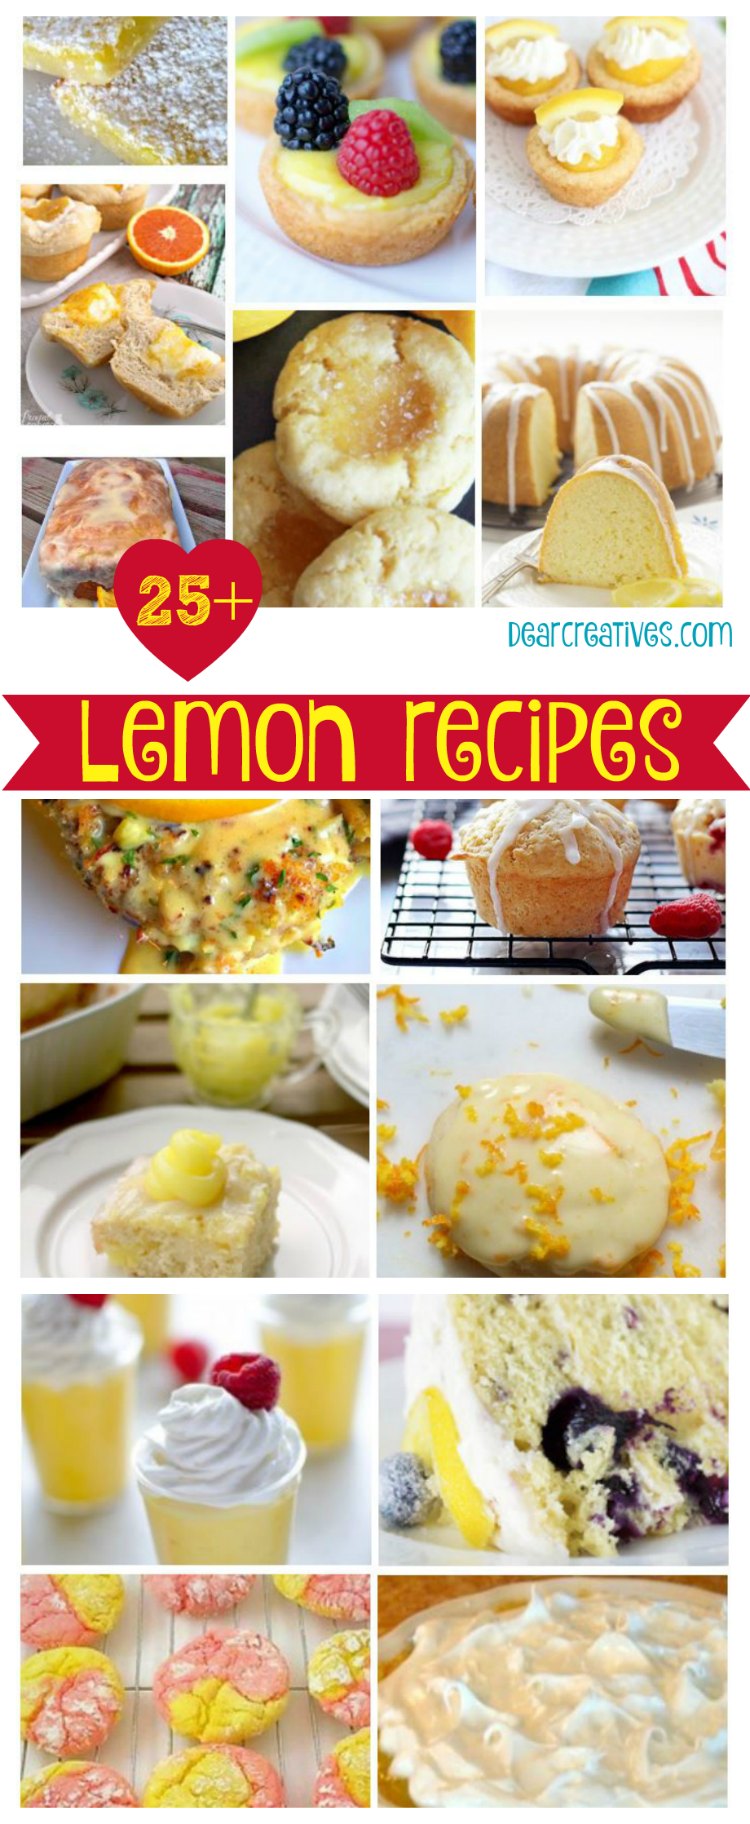 25+ Lemon Recipes For Lemon Lovers!